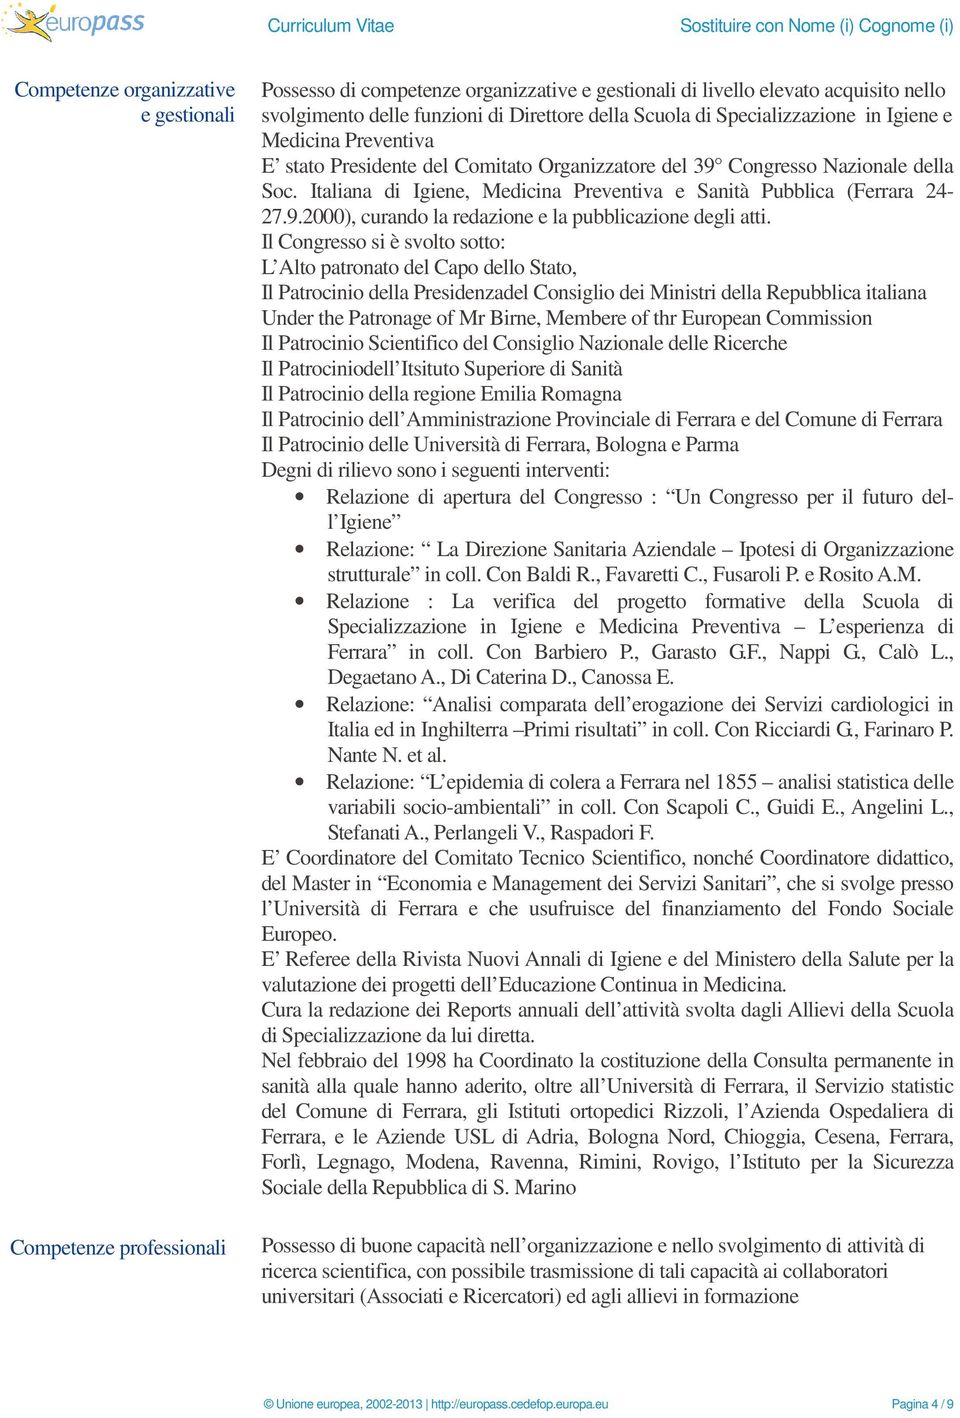 Italiana di Igiene, Medicina Preventiva e Sanità Pubblica (Ferrara 24-27.9.2000), curando la redazione e la pubblicazione degli atti.